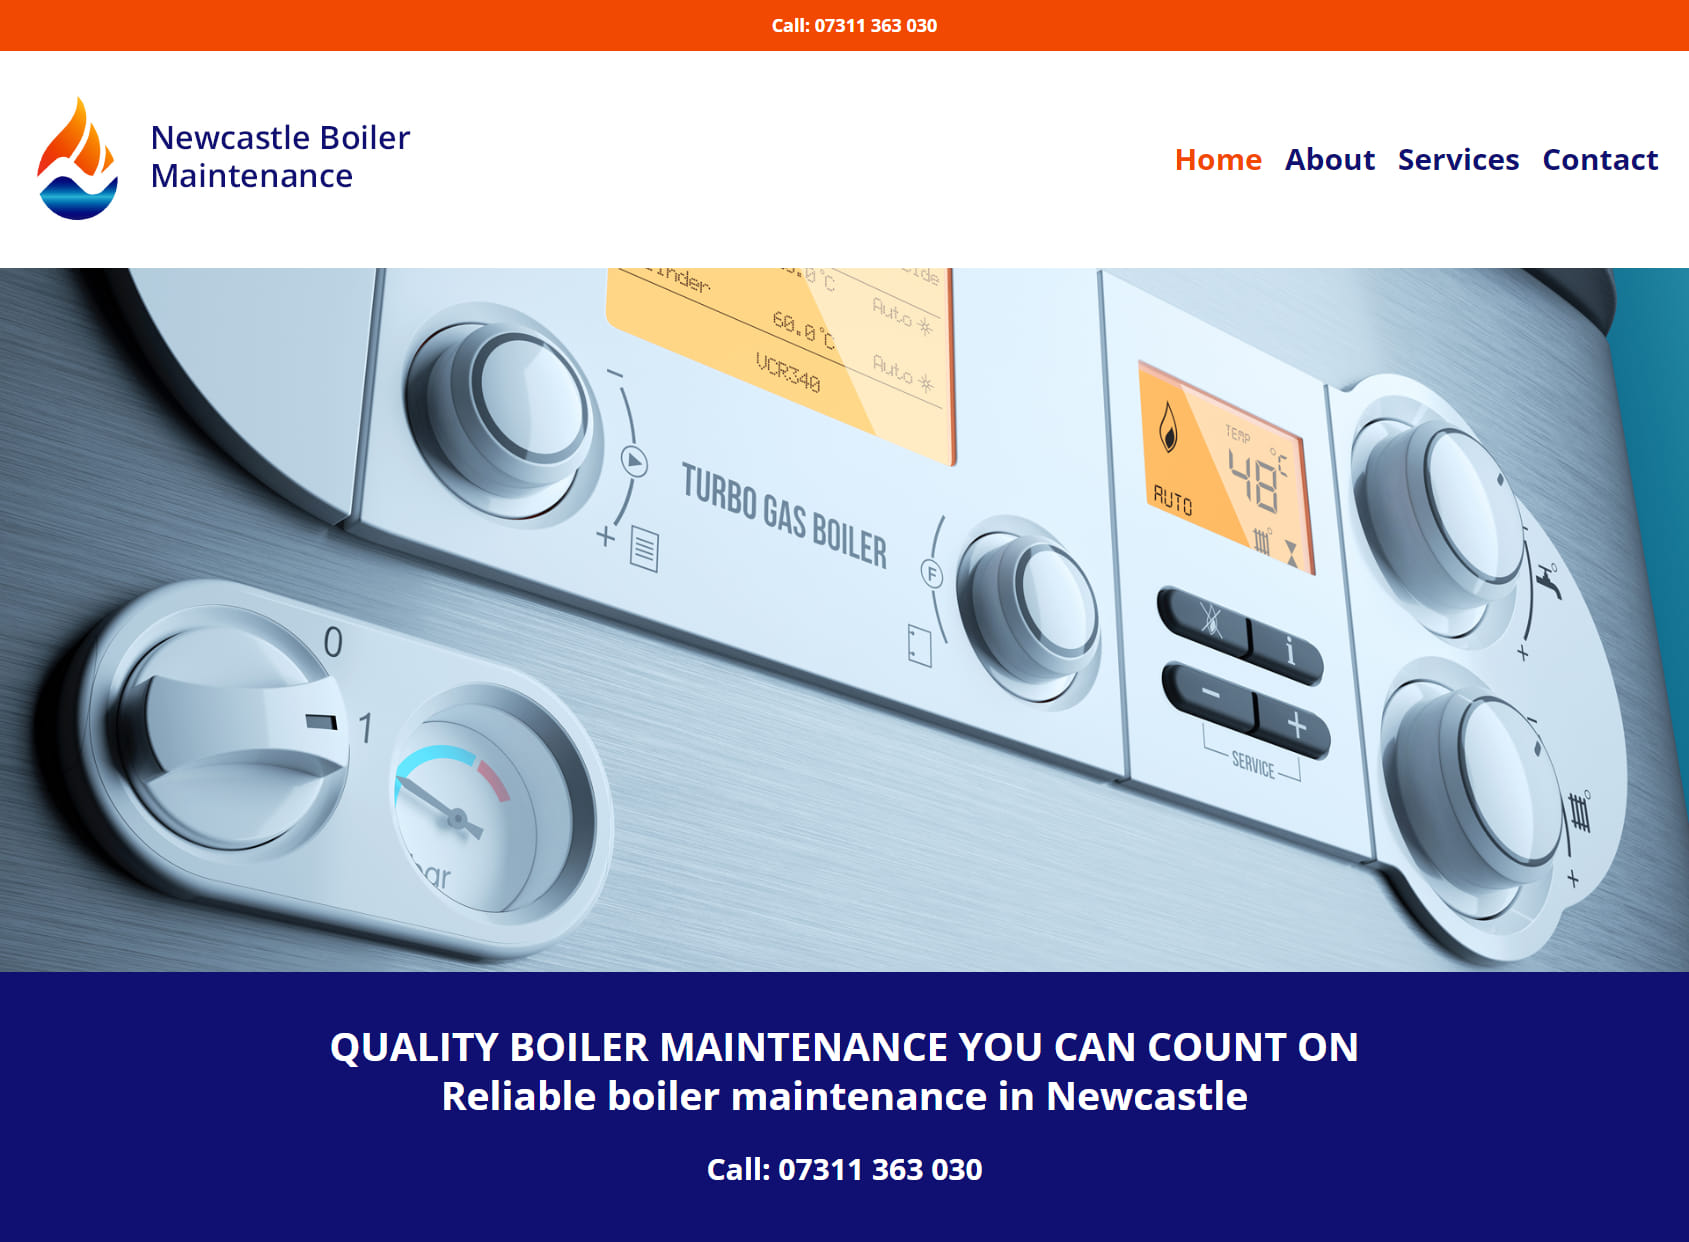 Newcastle Boiler Maintenance Ltd